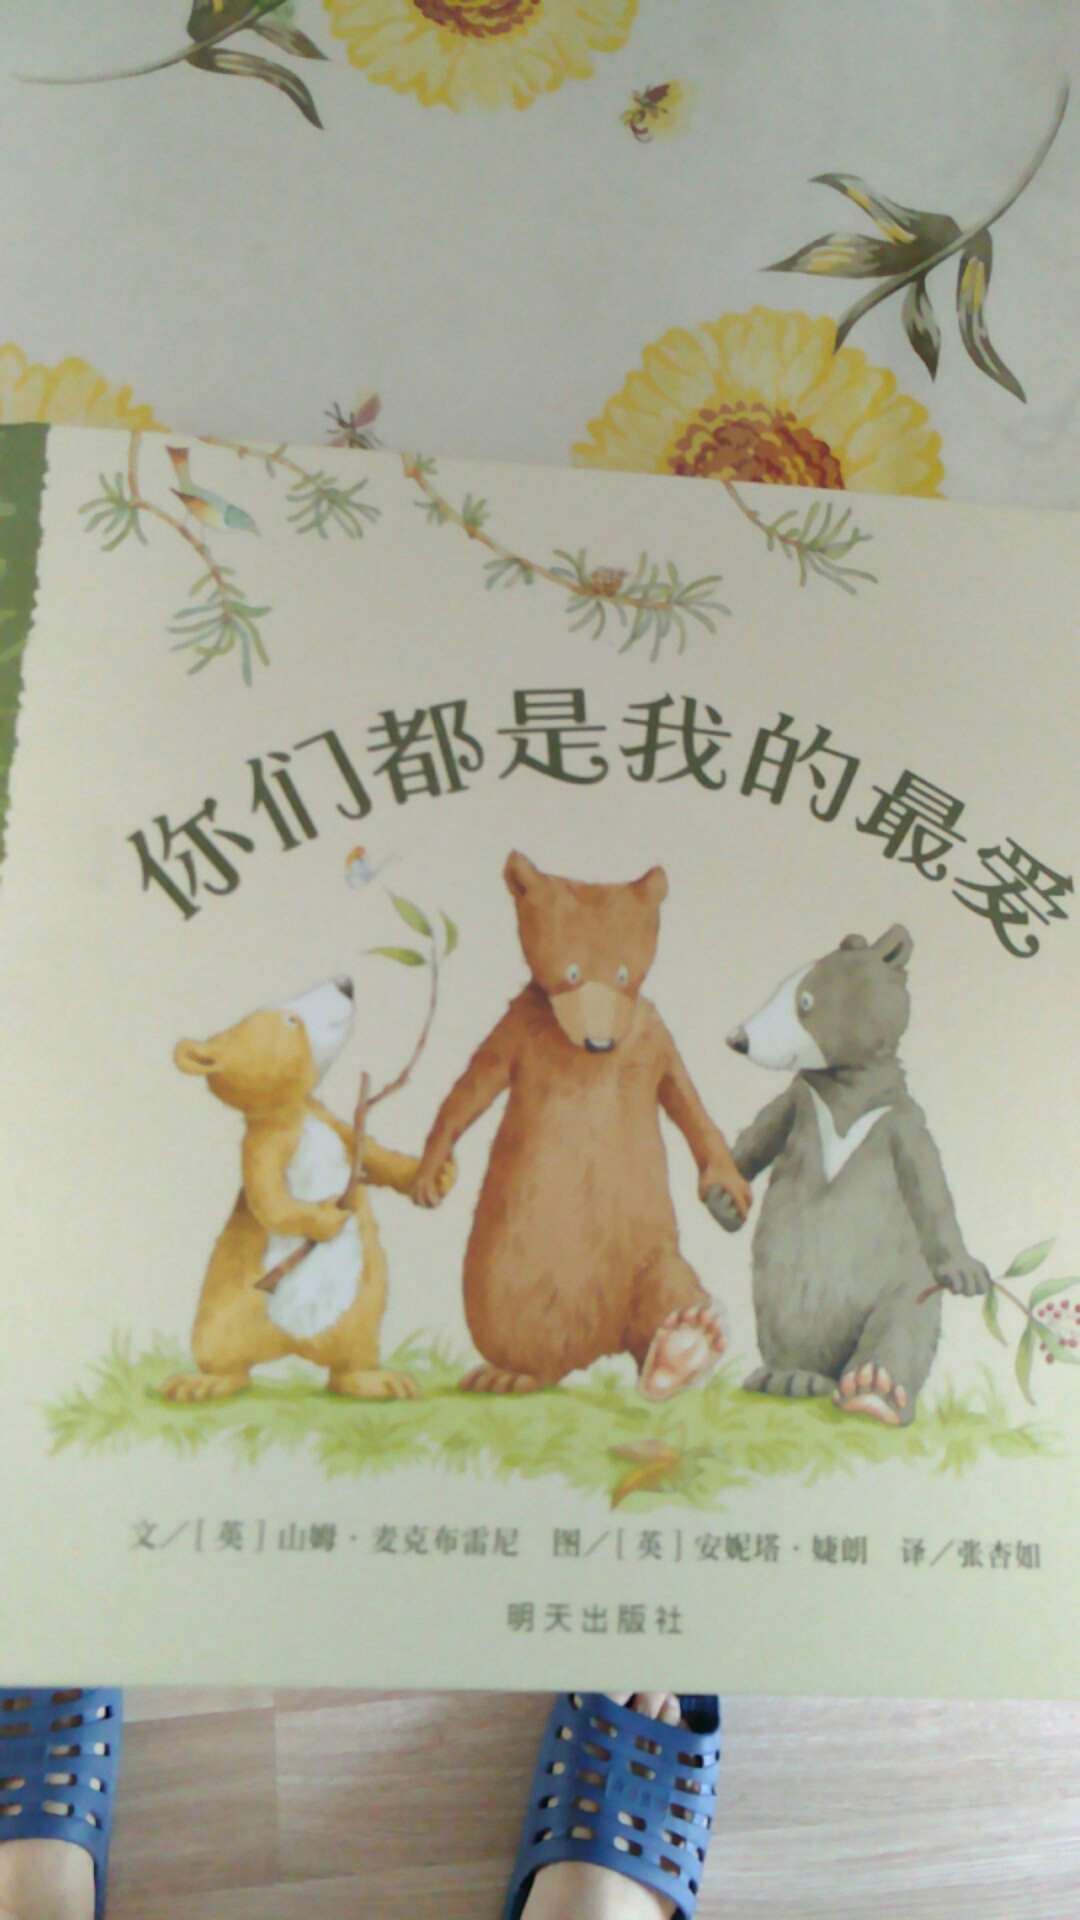 对于家里有二宝三宝的来说，这本书可以帮助孩子们处理一些紧张问题。